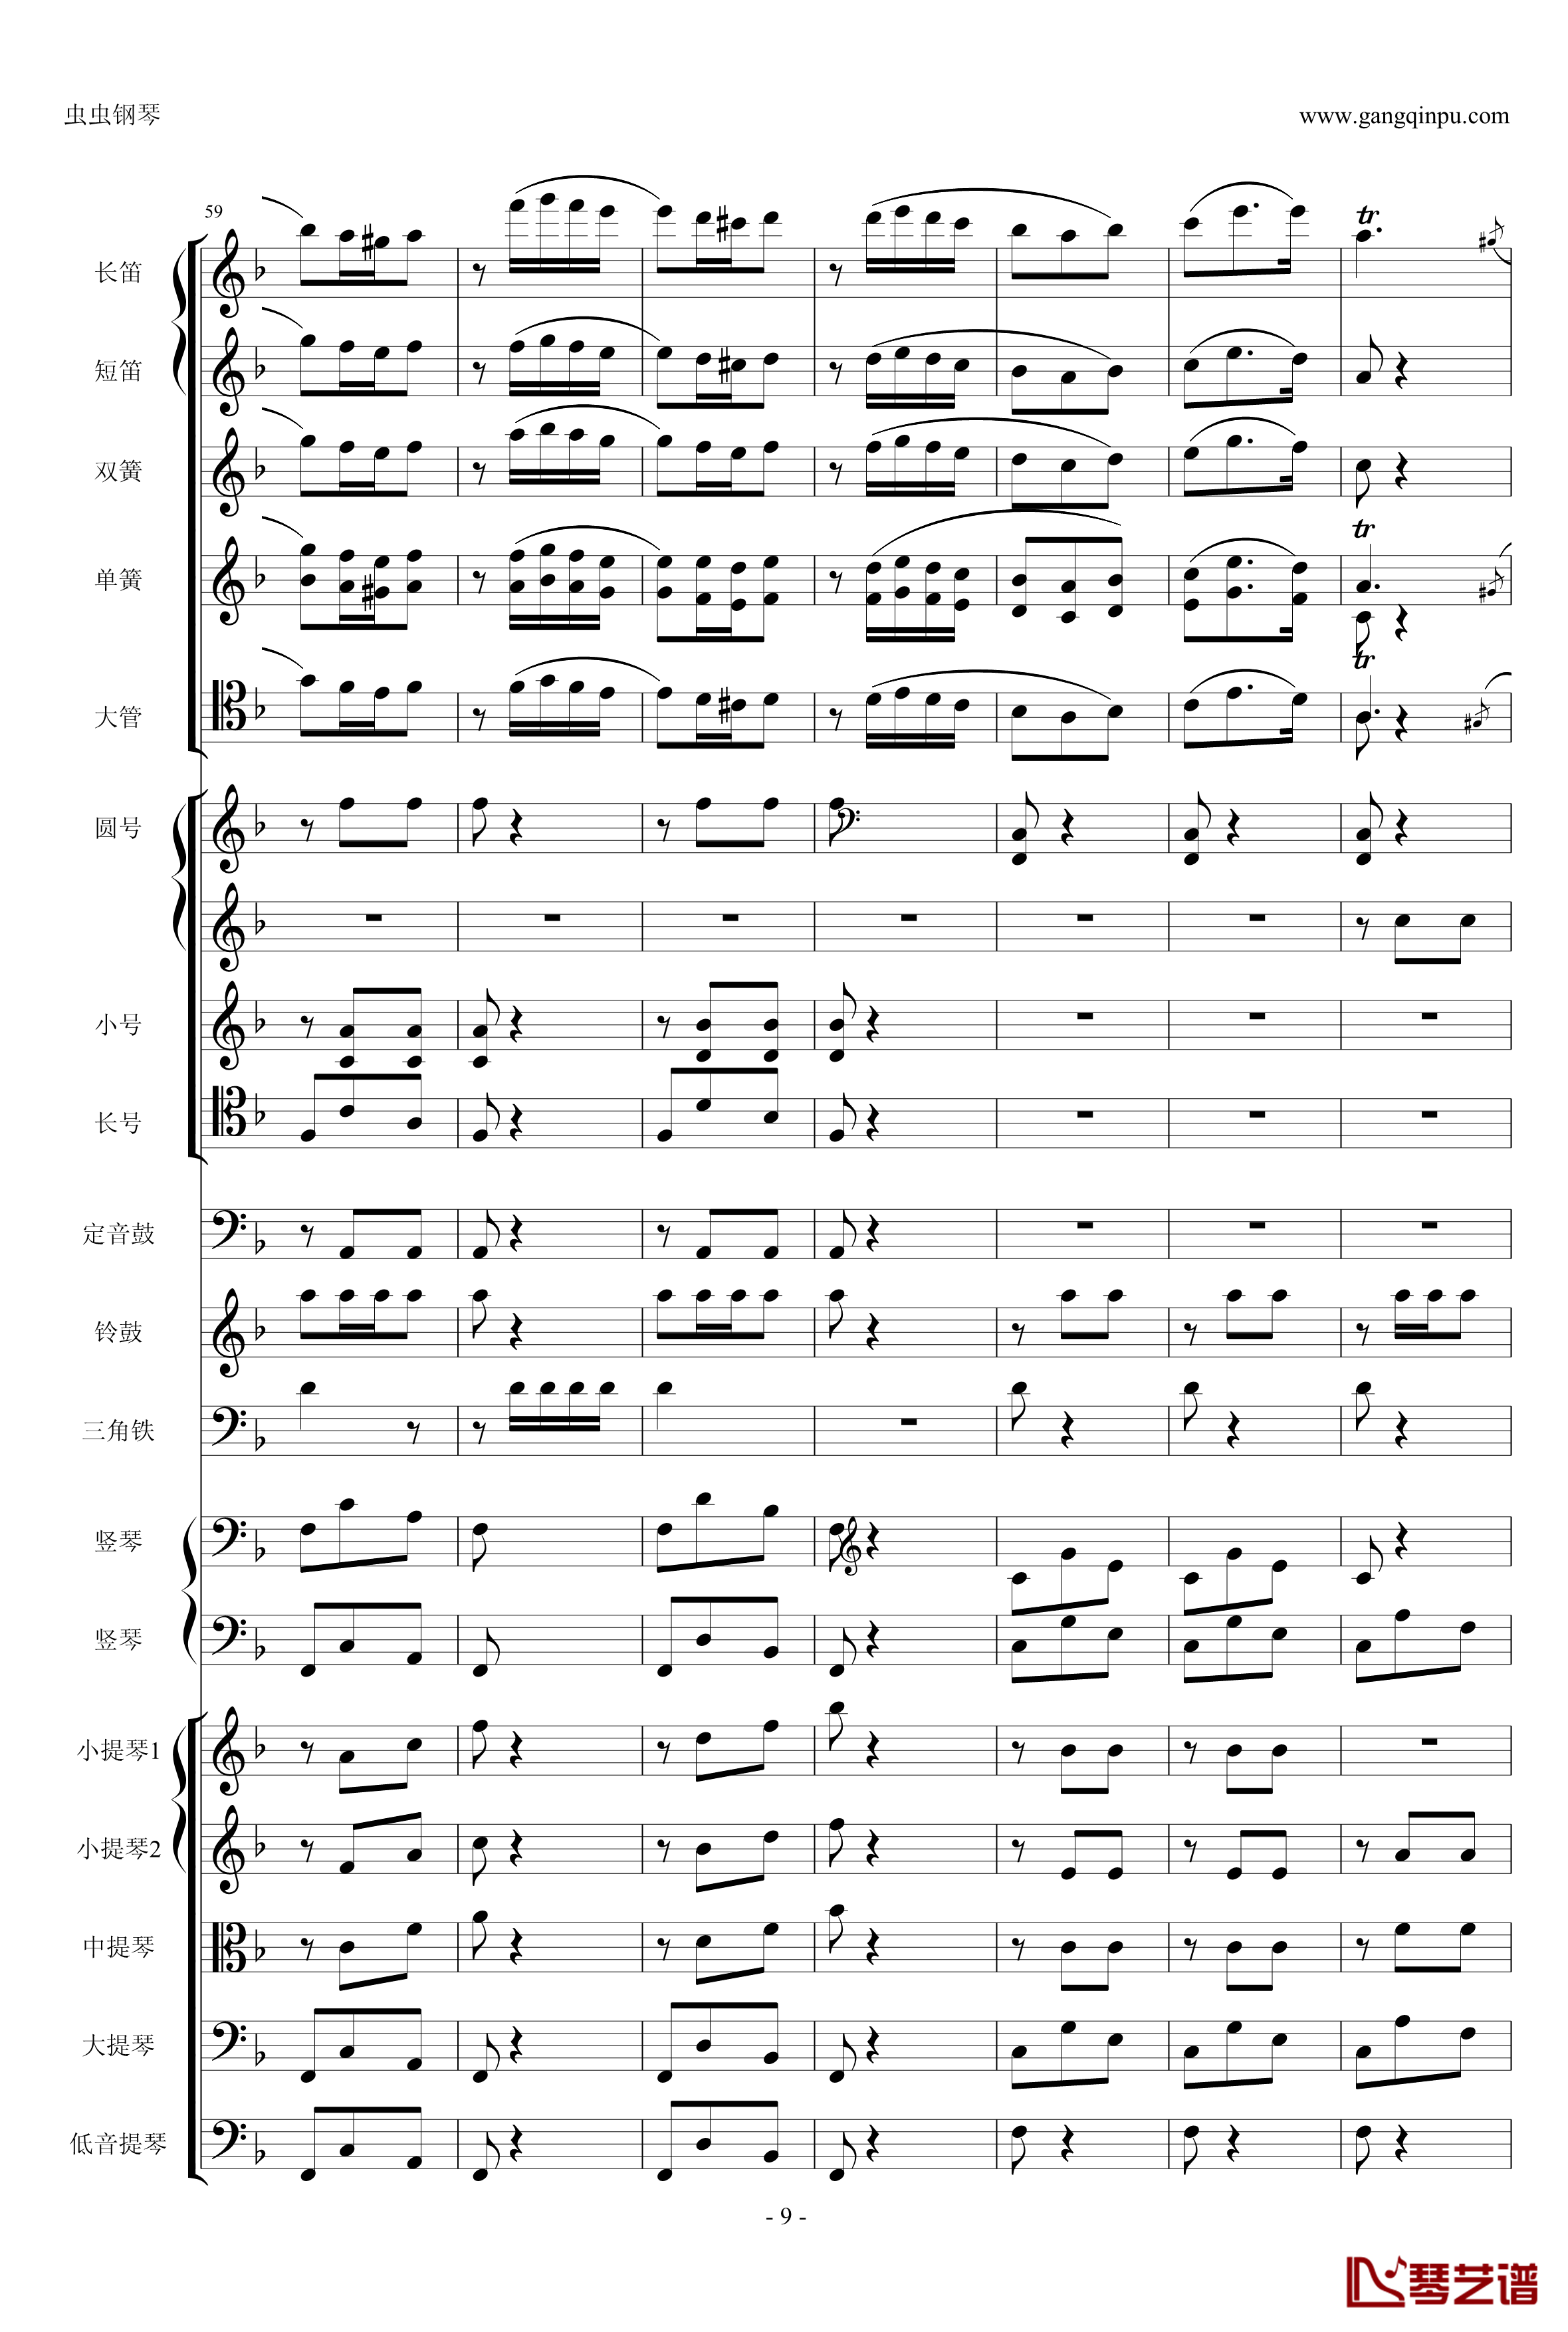 歌剧卡门选段钢琴谱-比才-Bizet- 第四幕间奏曲9